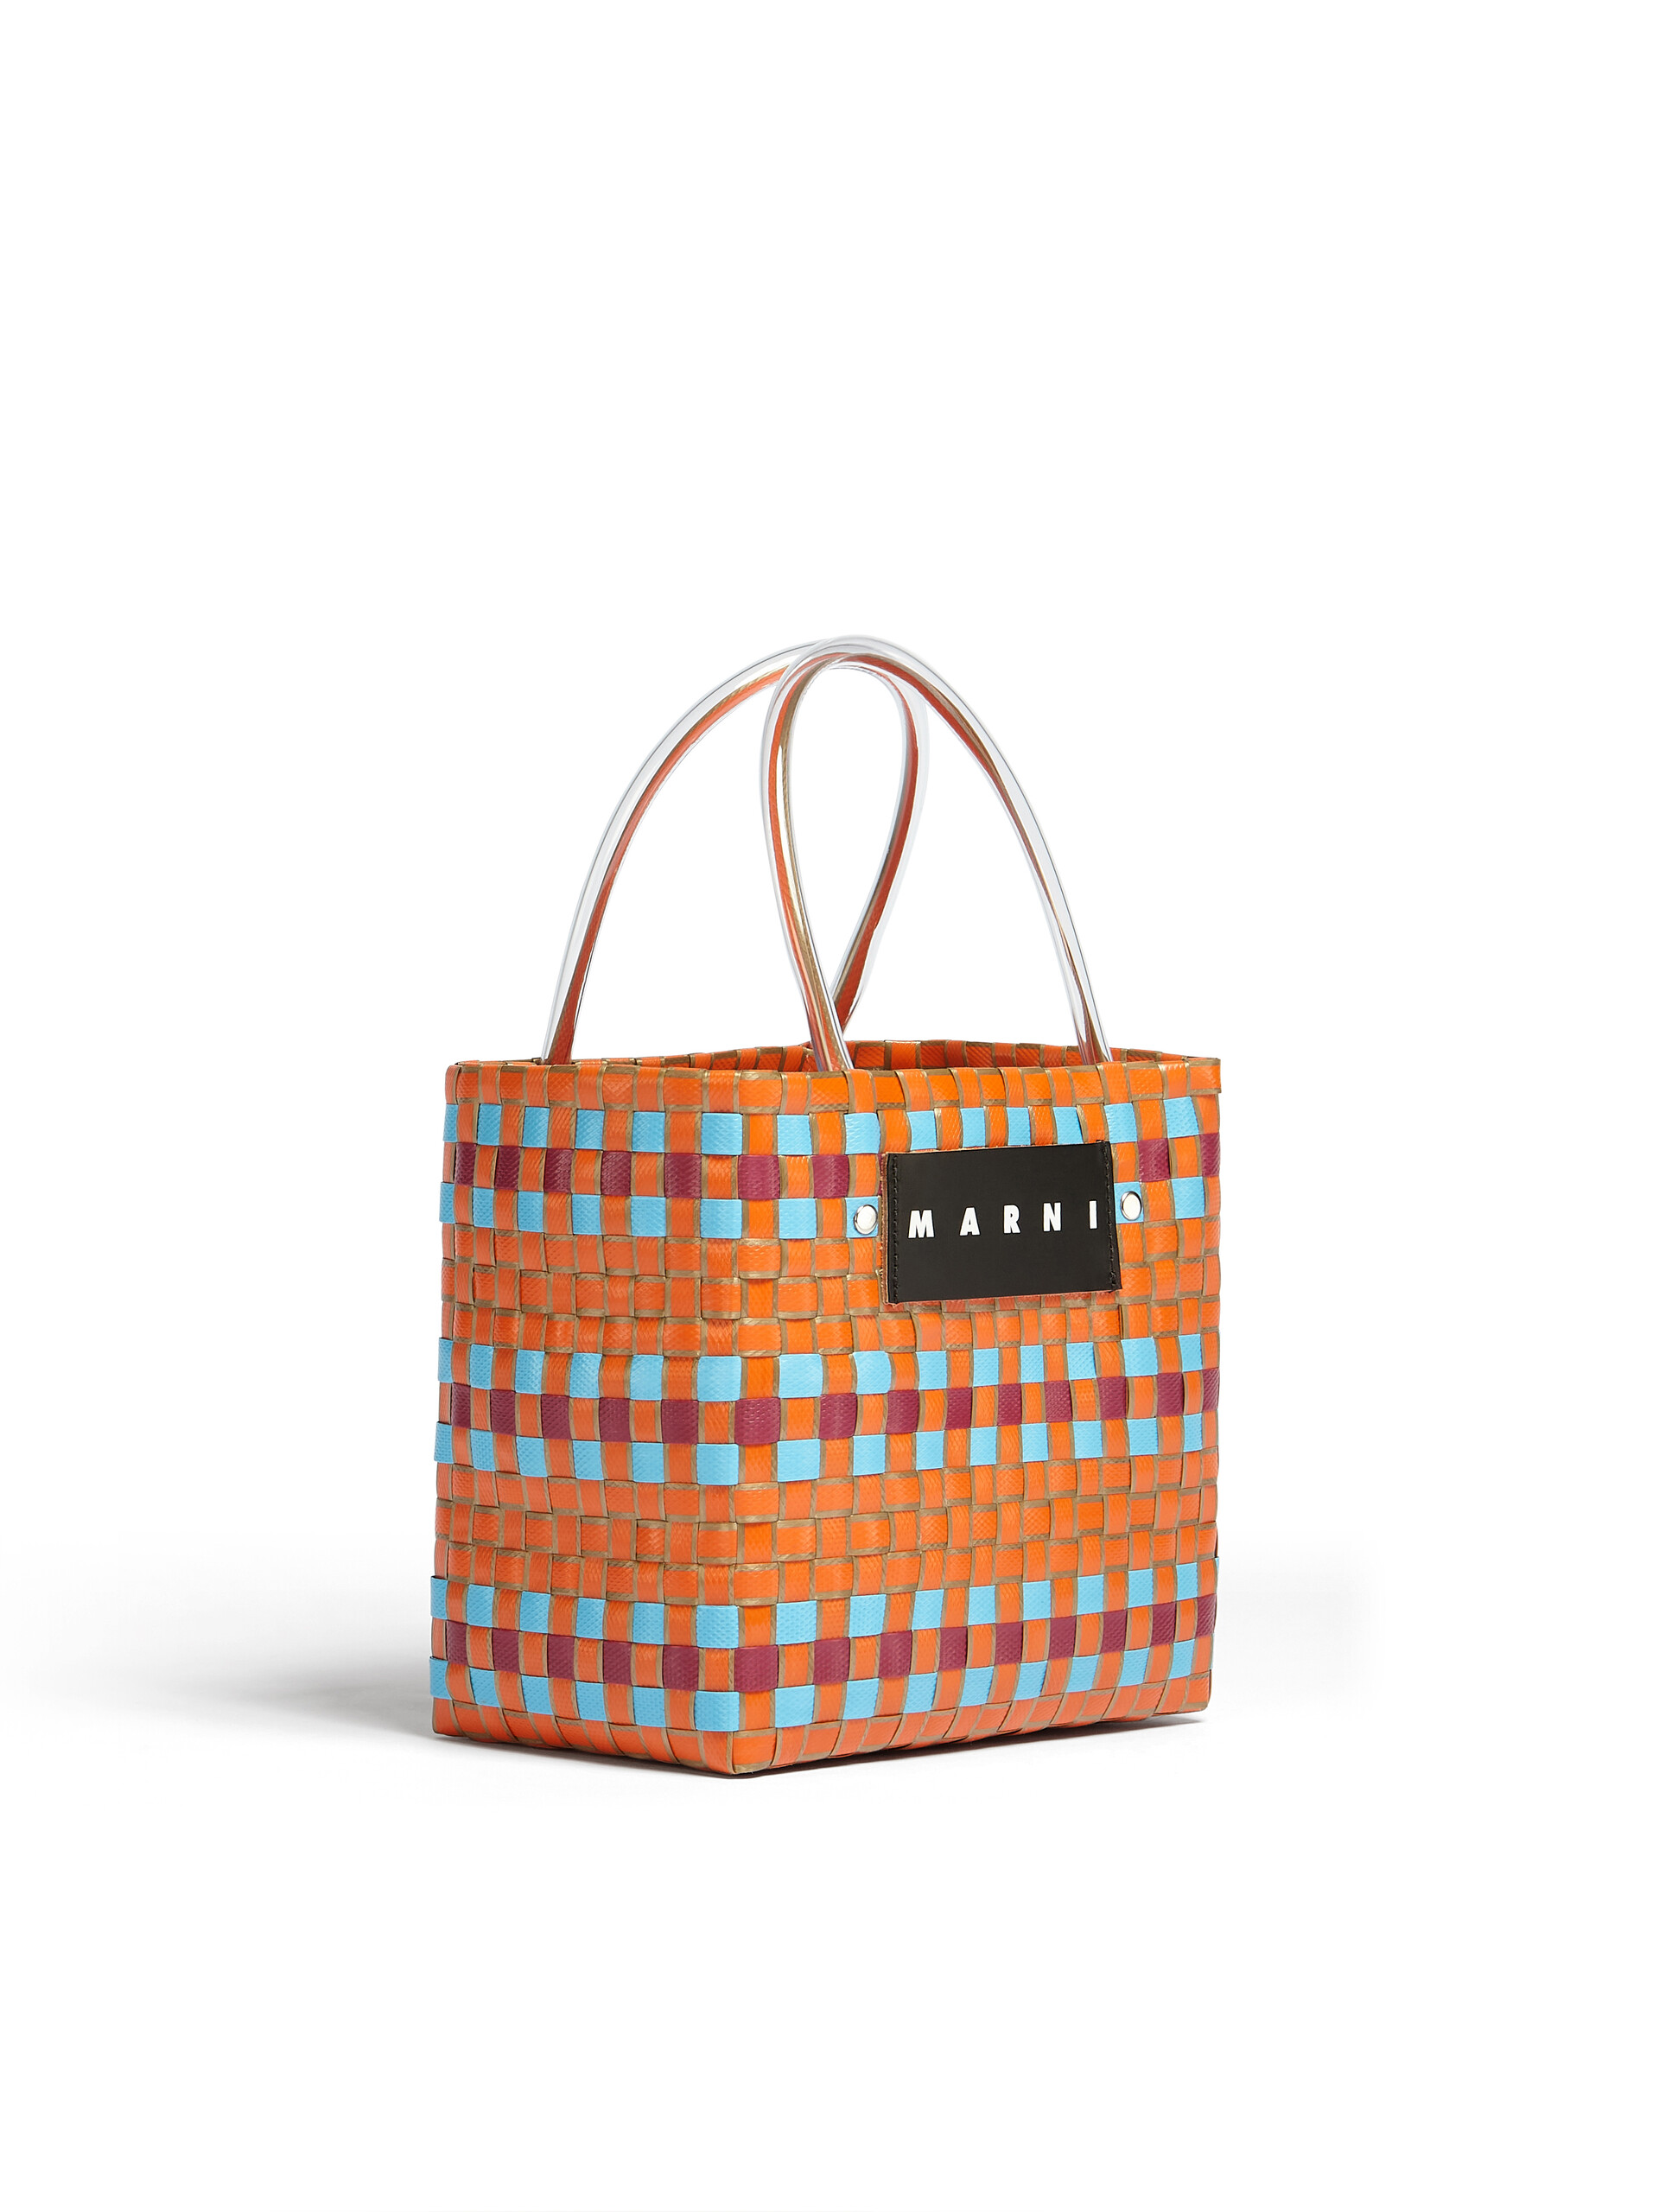 MARNI MARKET shopping bag in orange polypropylene - Bags - Image 2